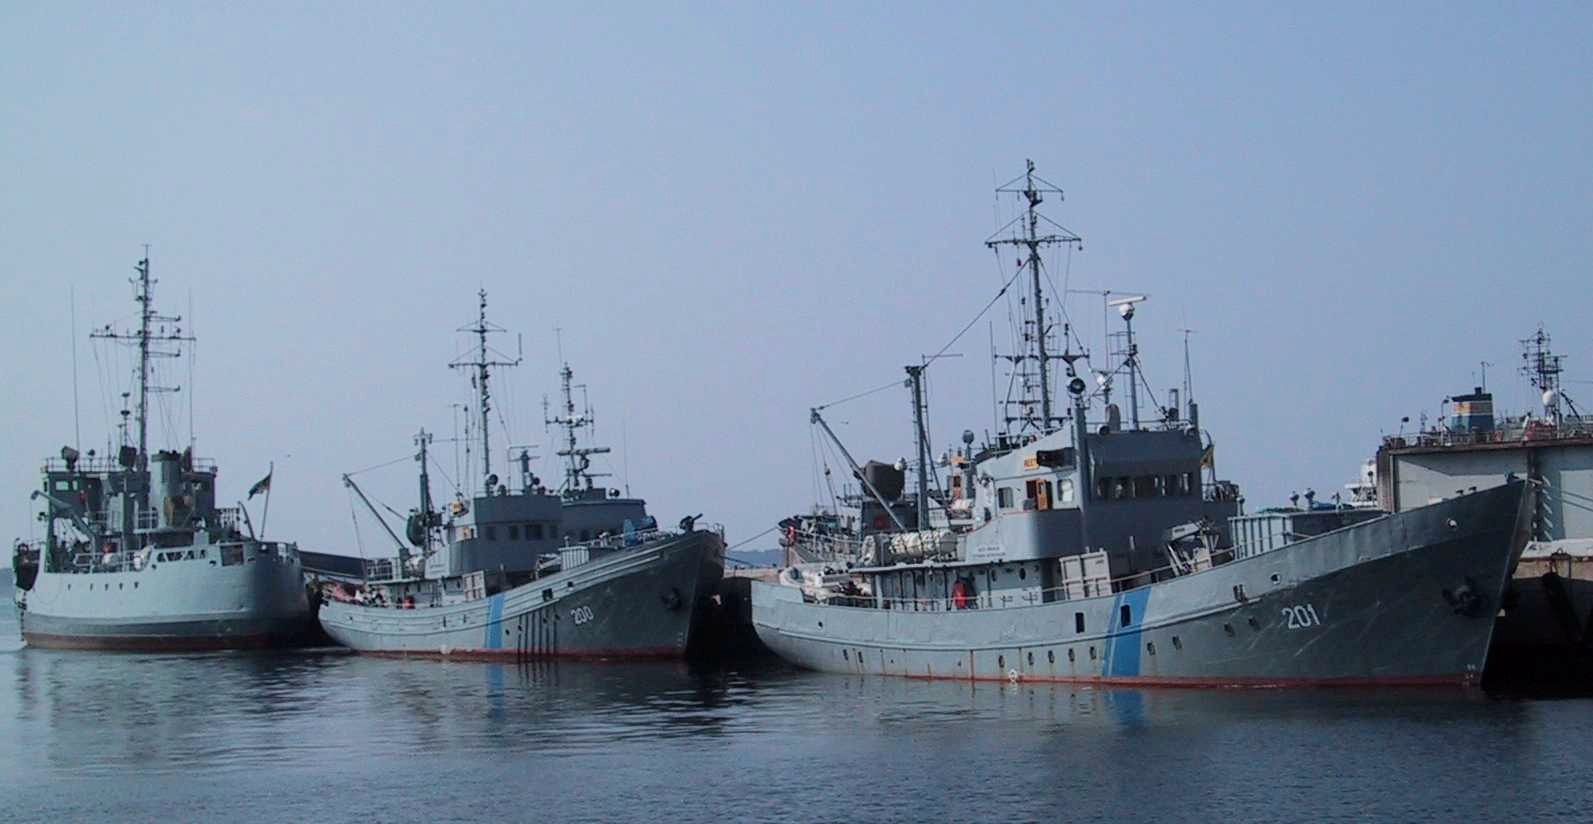 42 (94) Kuva 27. Viron merivartioston aluksia laiturissa.